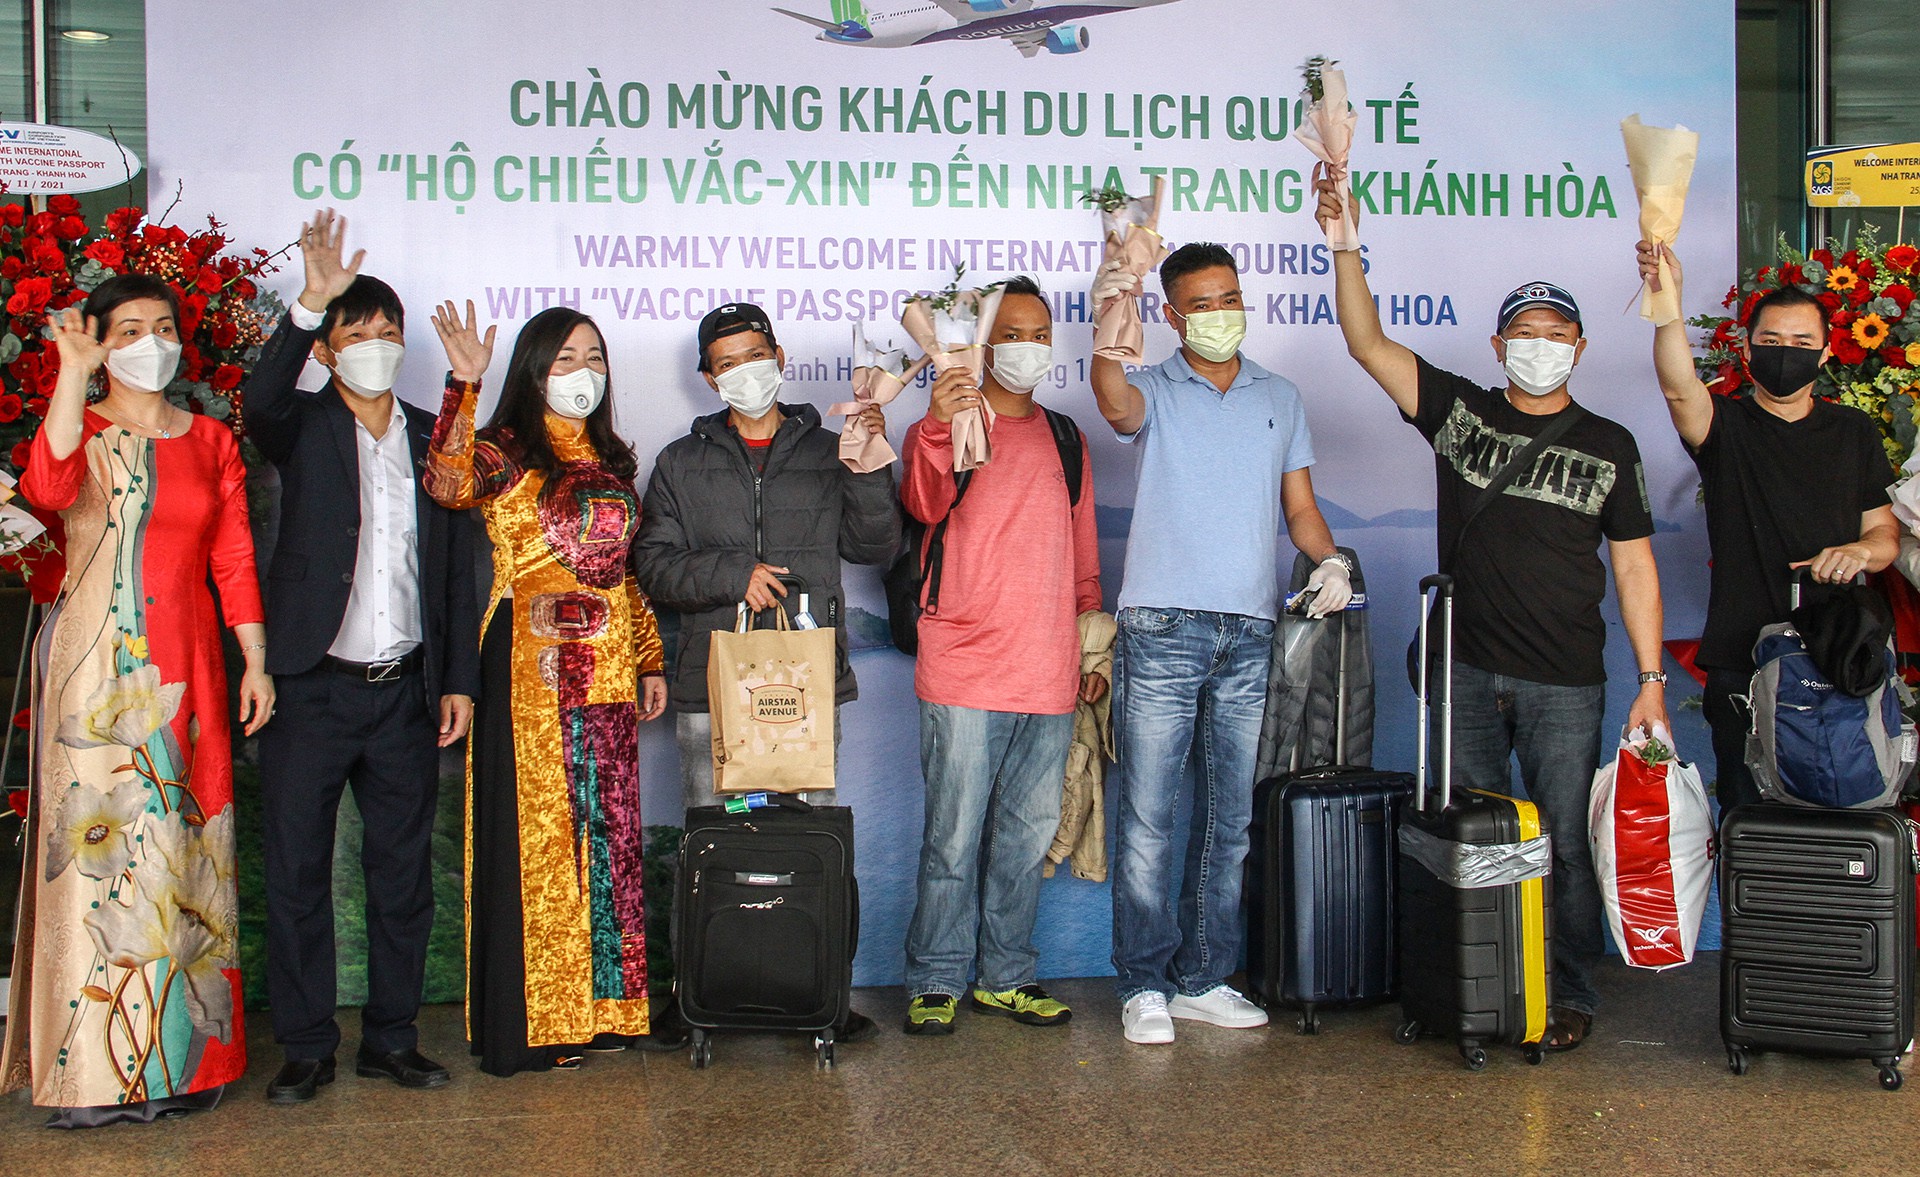 Khach quoc te den Nha Trang anh 2  - 4_zing - Hơn 40 du khách quốc tế đến Khánh Hòa sau dịch